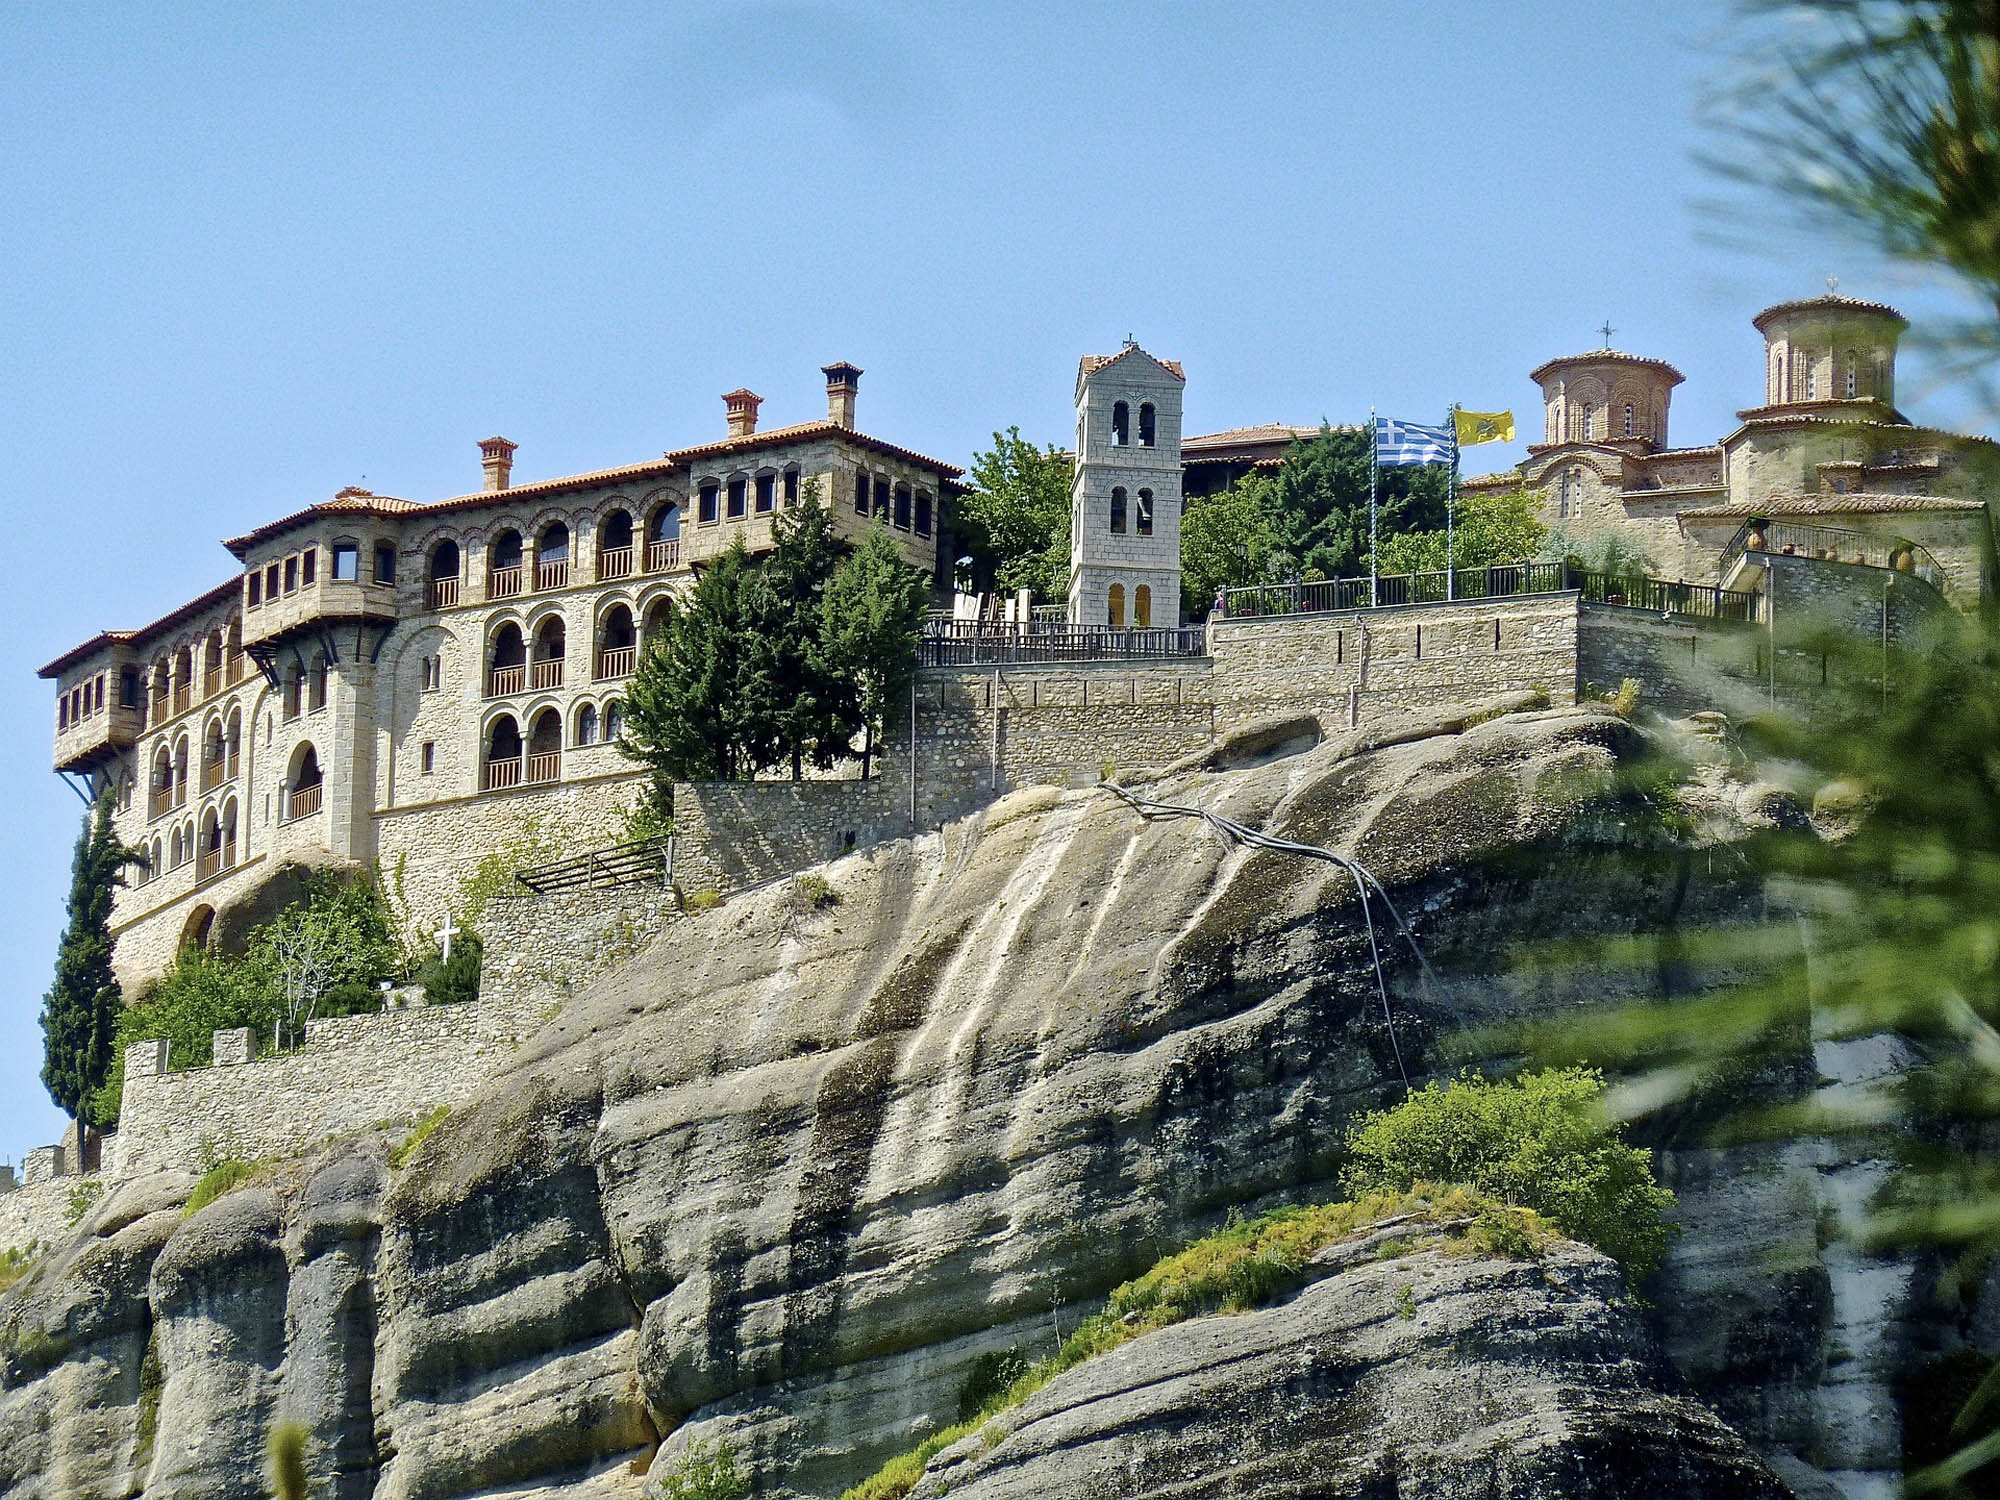 Monastery na skałach, meteory greckie, widok z dołu na klasztor wybudowany na skale